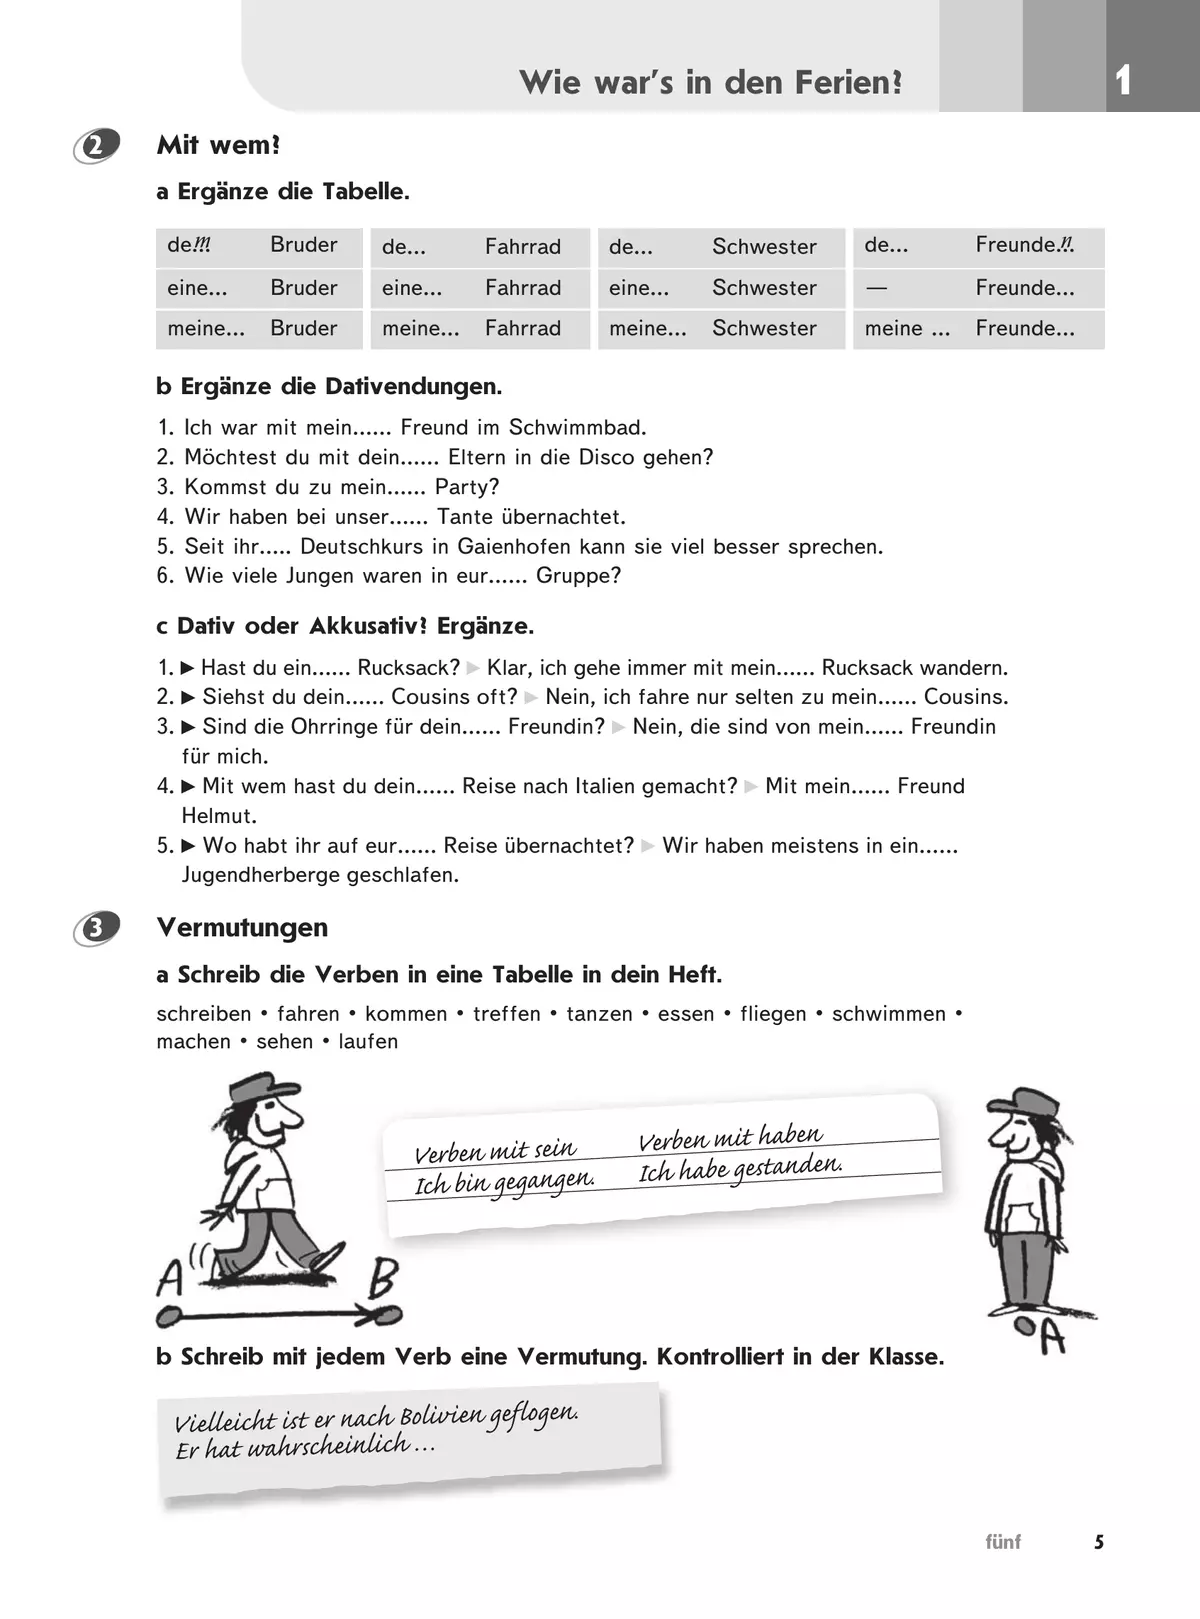 Немецкий язык. Второй иностранный язык. Рабочая тетрадь. 7 класс. 4